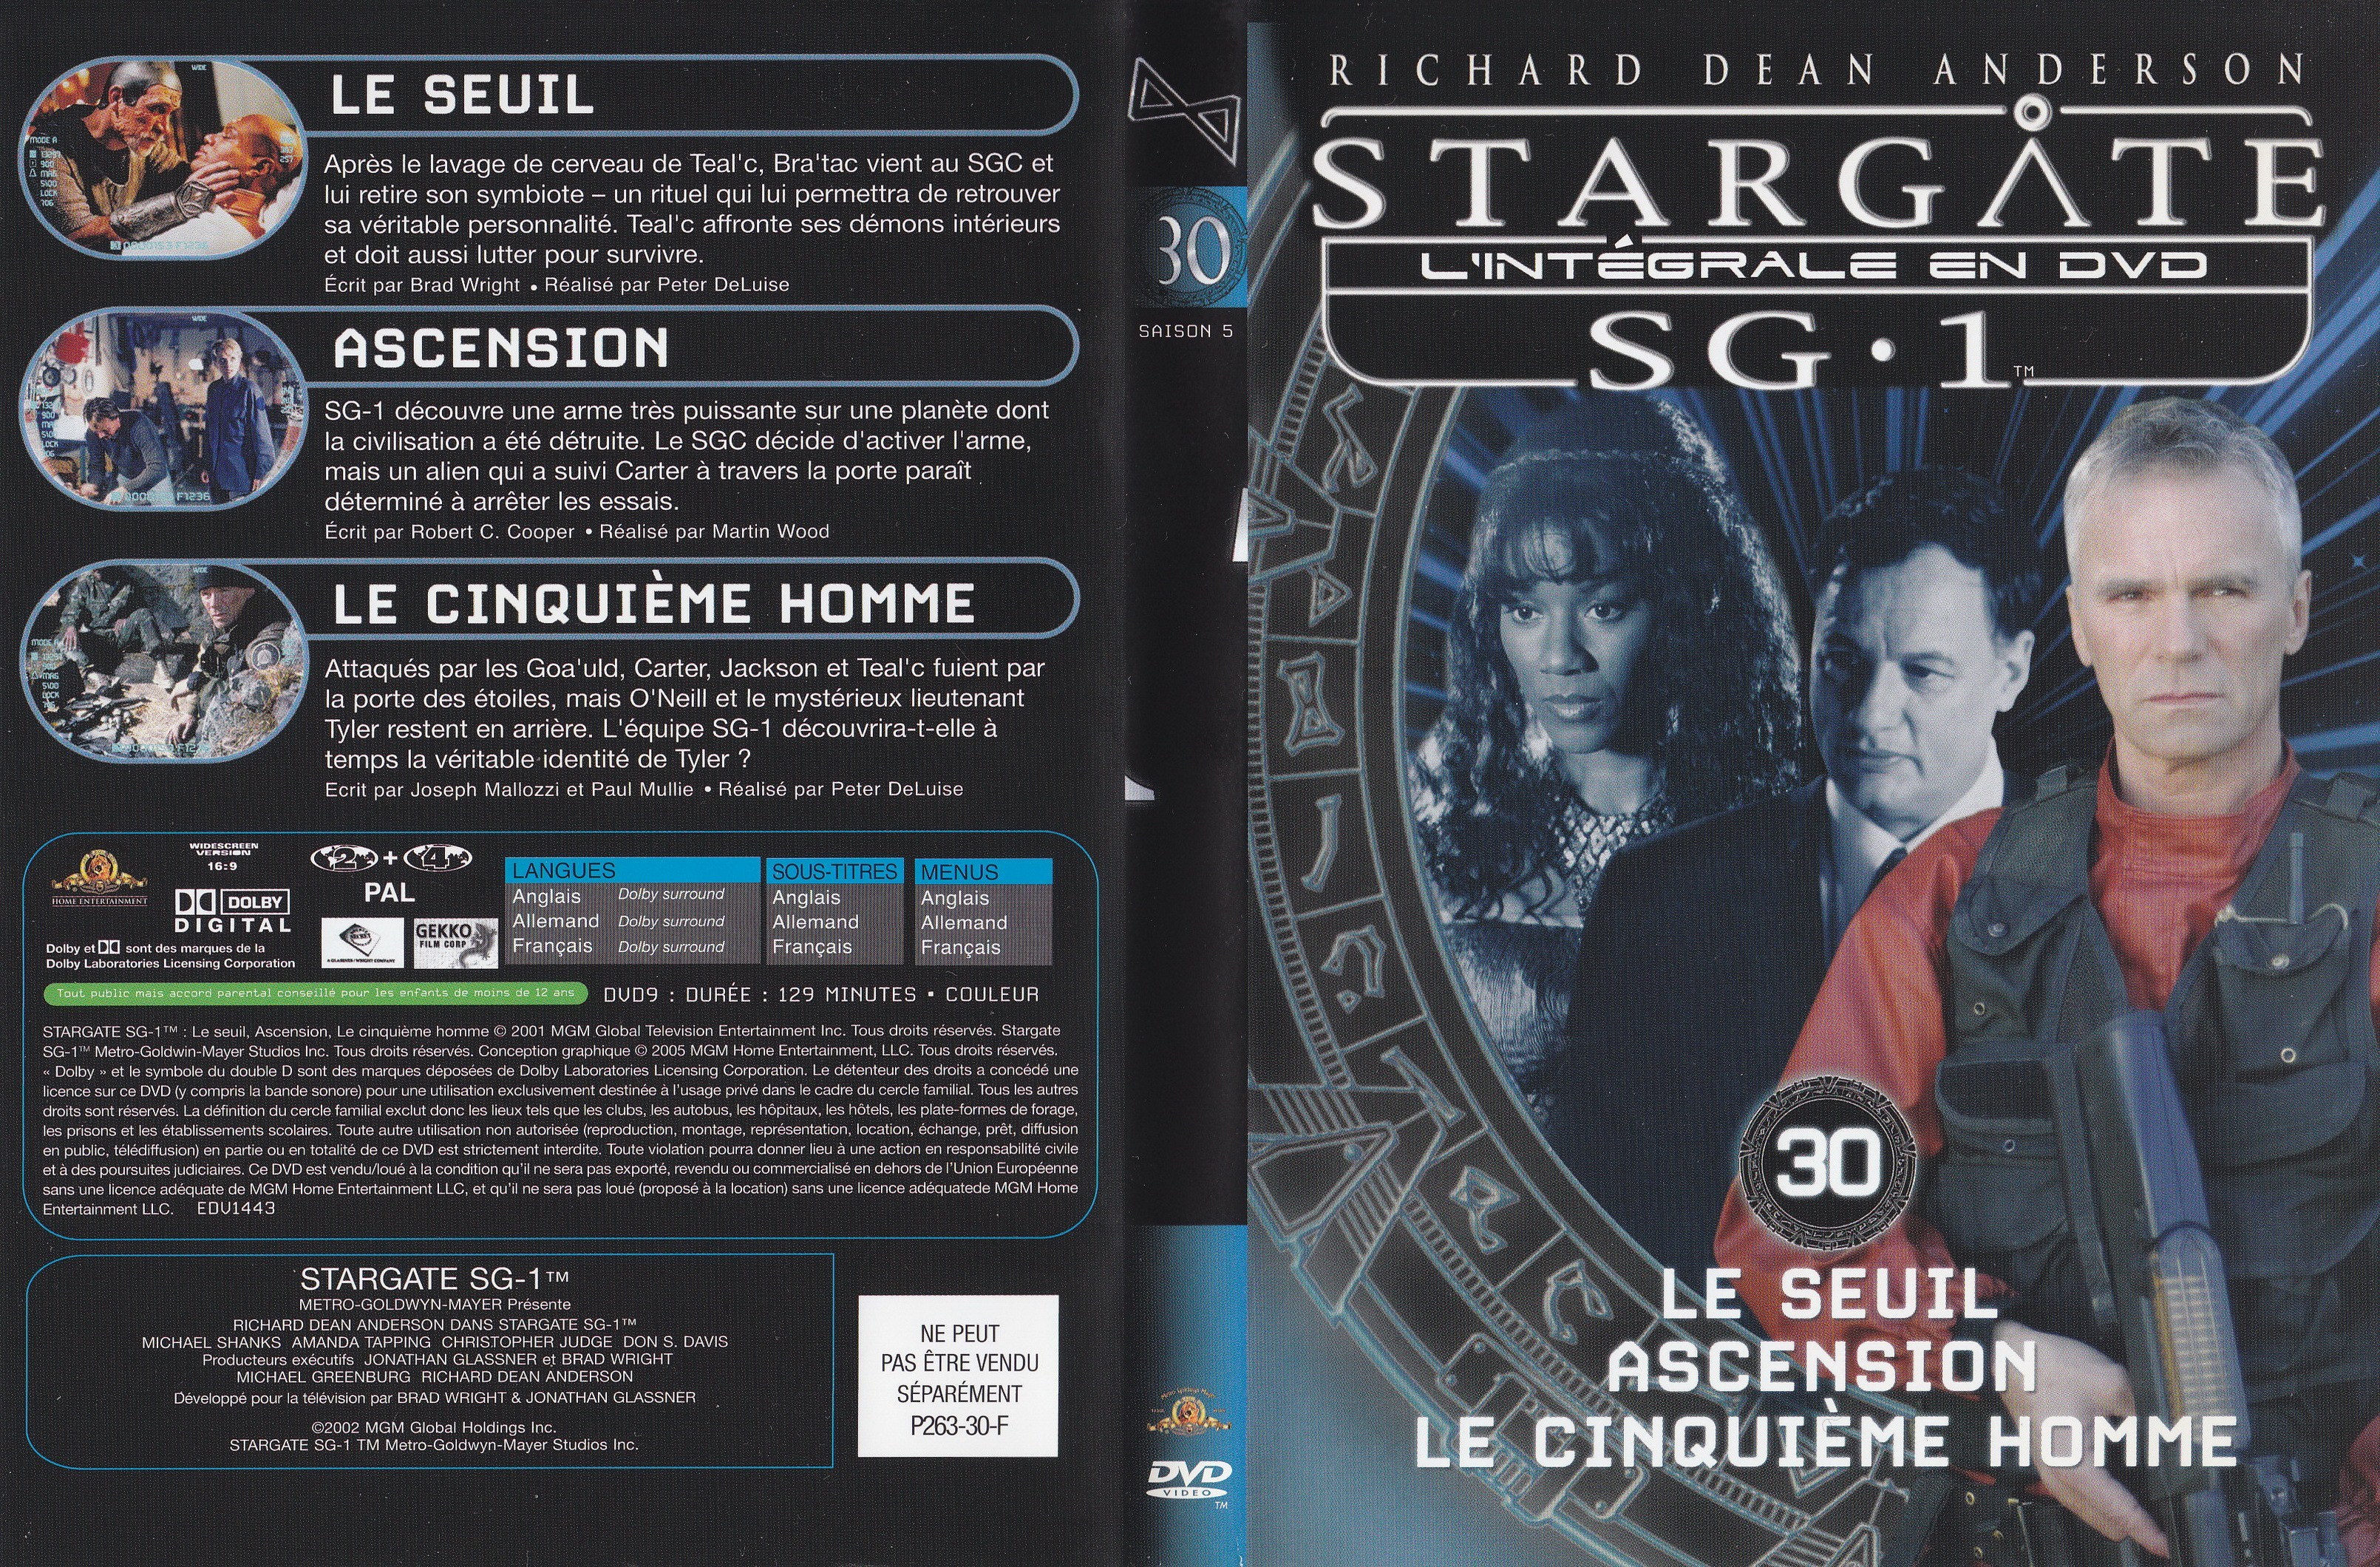 Stargate SG1 Intgrale Saison 5 vol 30